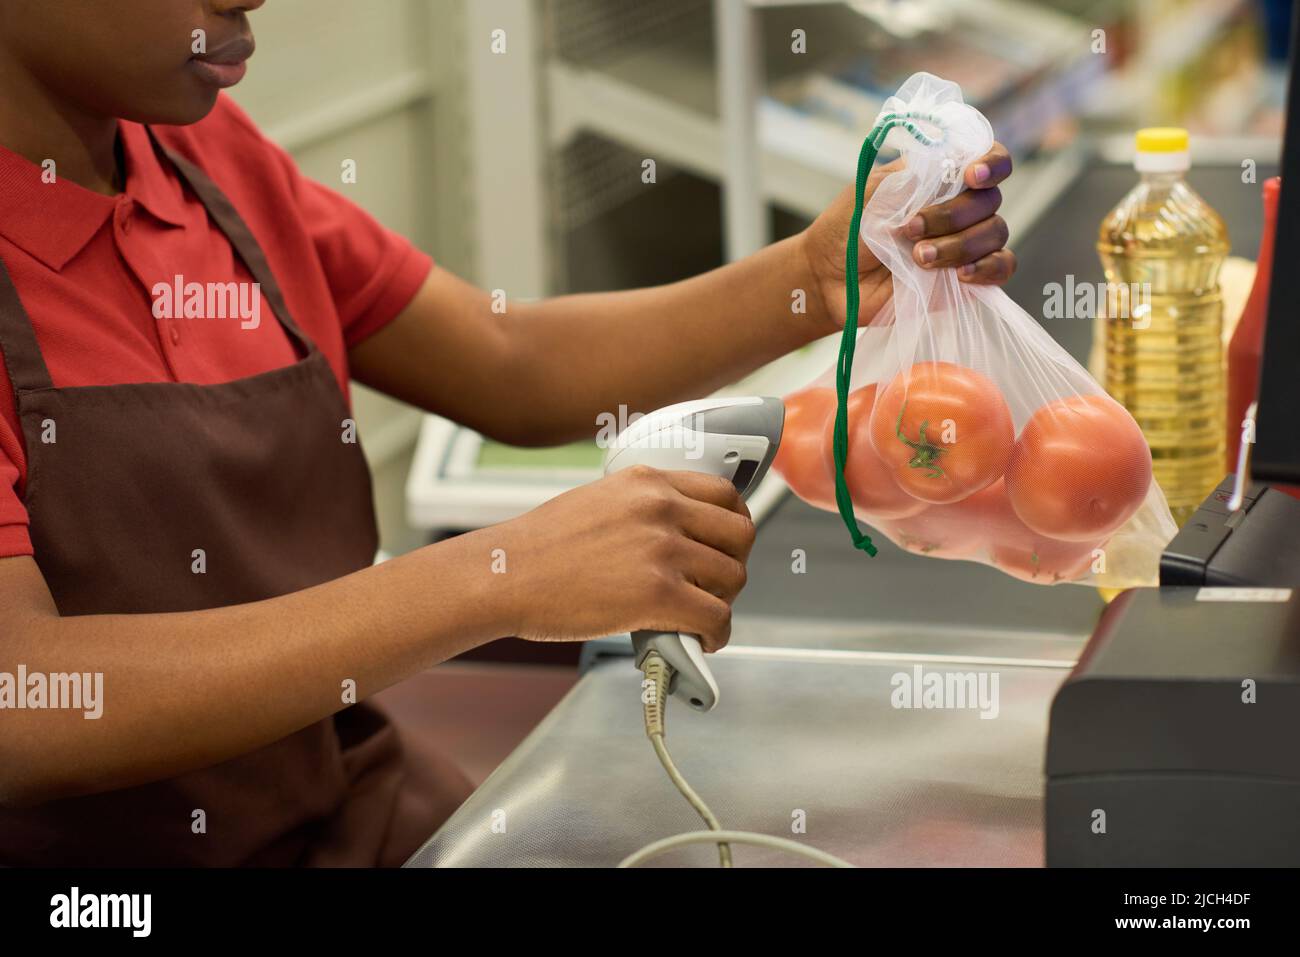 Junge schwarze Frau in rotem Hemd und brauner Schürze scannt frische Tomaten in Zellophanbeutel über den Kassenschalter im Supermarkt Stockfoto